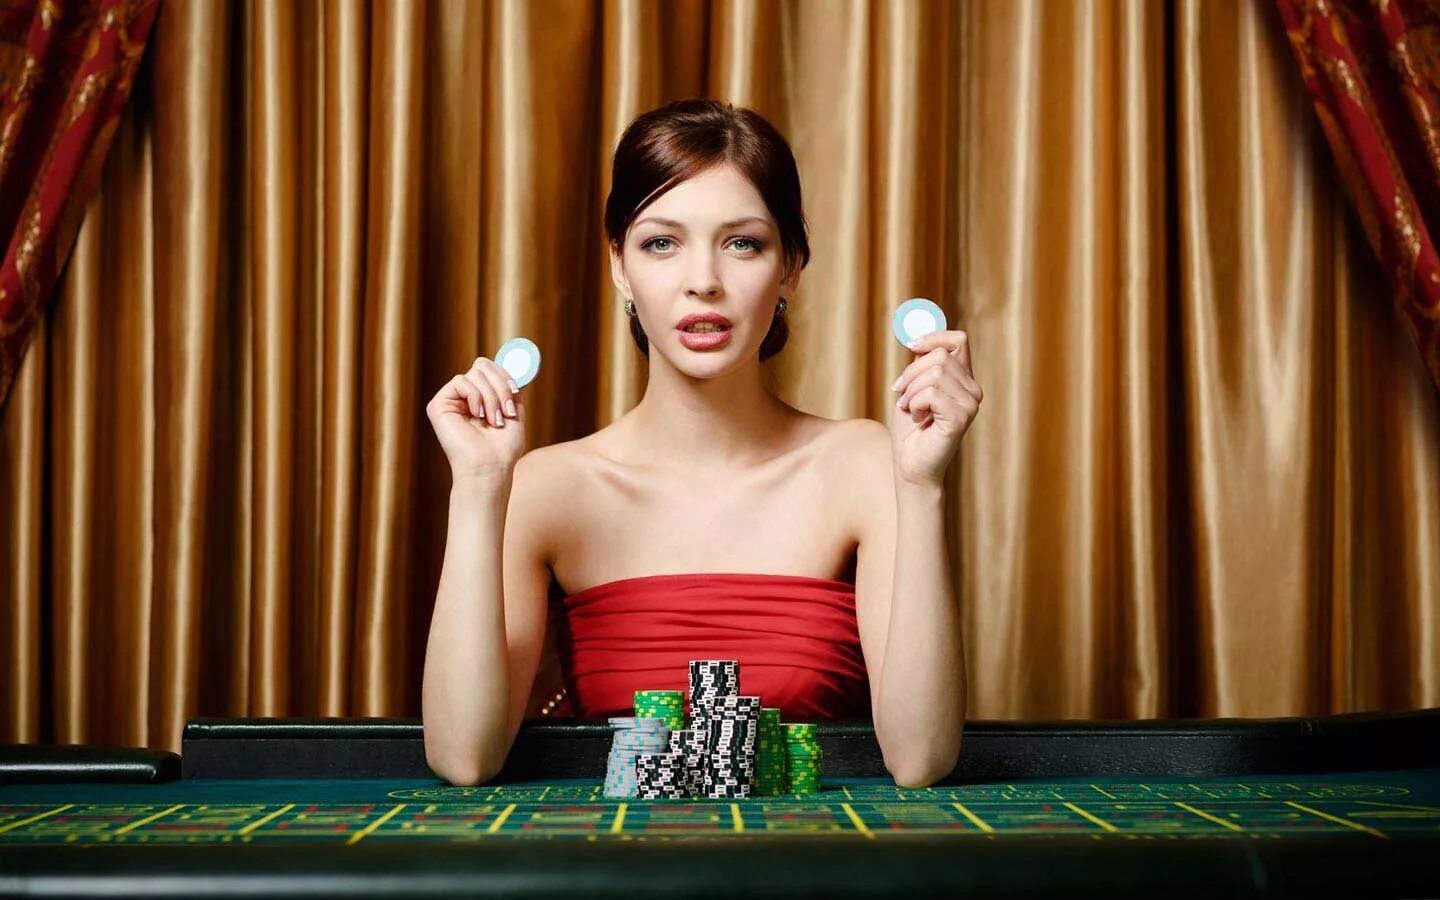 В предвкушении азарта. Красивая девушка казино. Дамы в казино. Девушка за покерным столом. Фотосессия в казино.